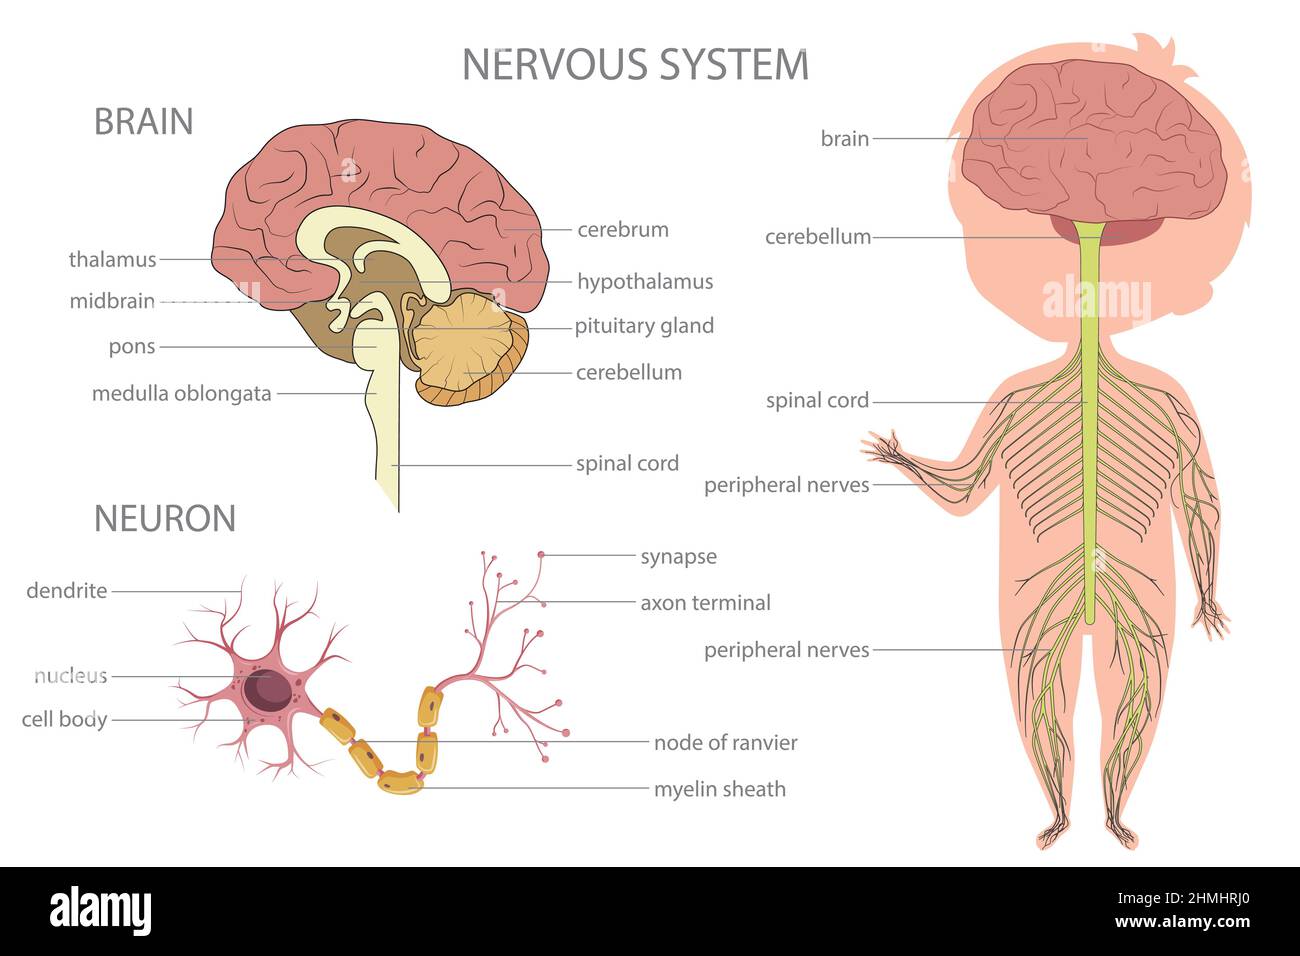 Por qué está formado el sistema nervioso